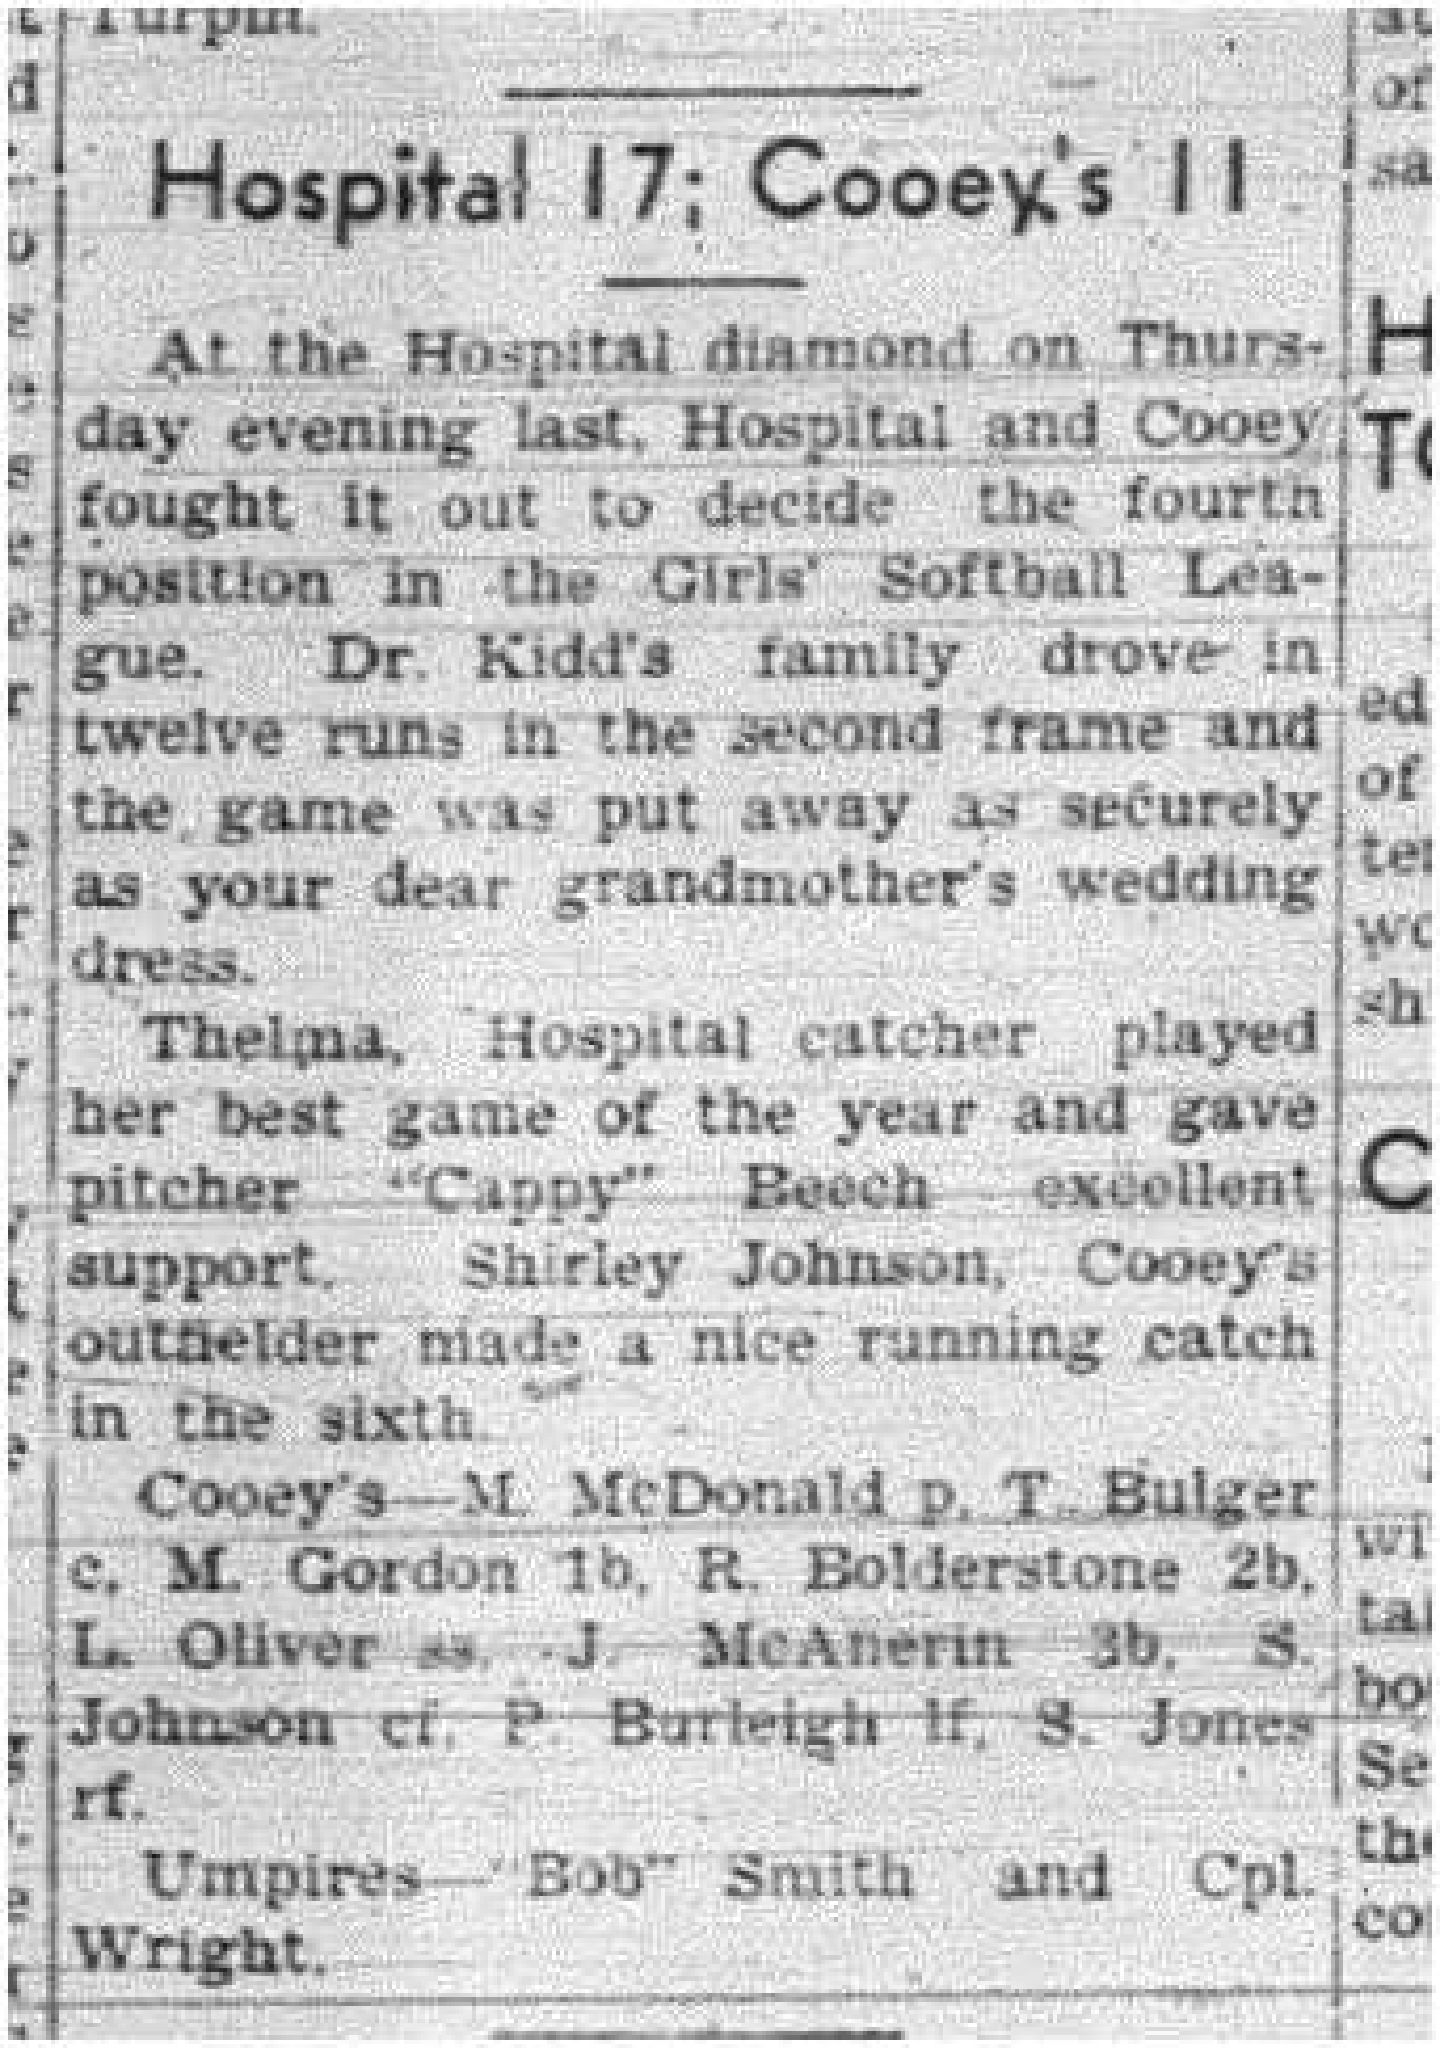 1943-08-19 Softball - Girls Hospital vs Cooeys